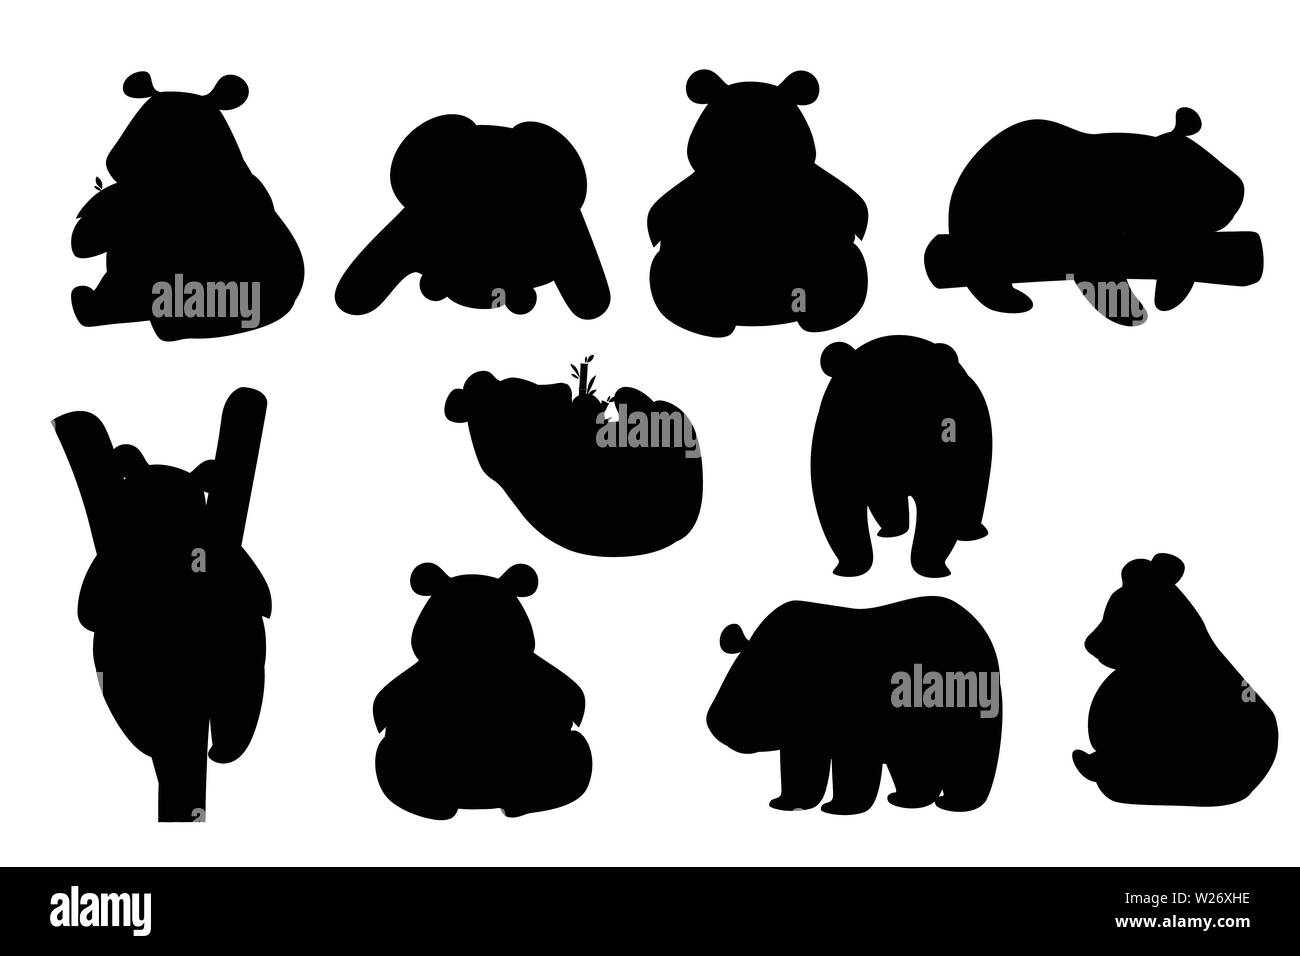 Schwarze Silhouette der niedliche Große Panda in unterschiedlichen Posen cartoon Animal design Flachbild Vector Illustration. Stock Vektor